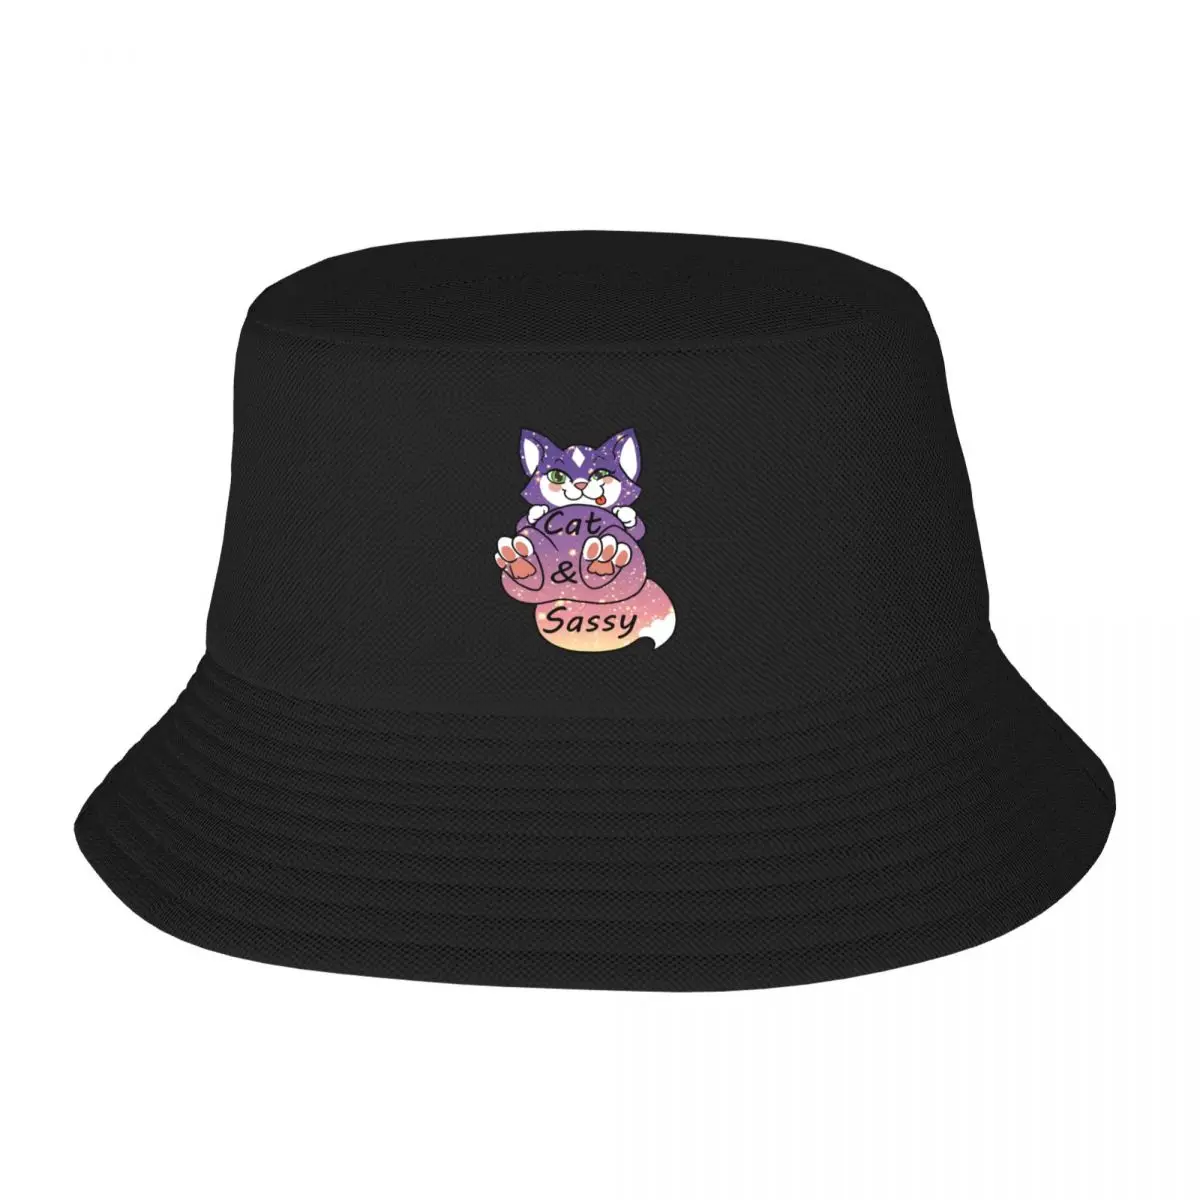 Новая шляпа-ведро Cat & Sassy - Glitter Edition в стиле Хип-хоп, милая шляпа для папы, Мужская Кепка, Женская